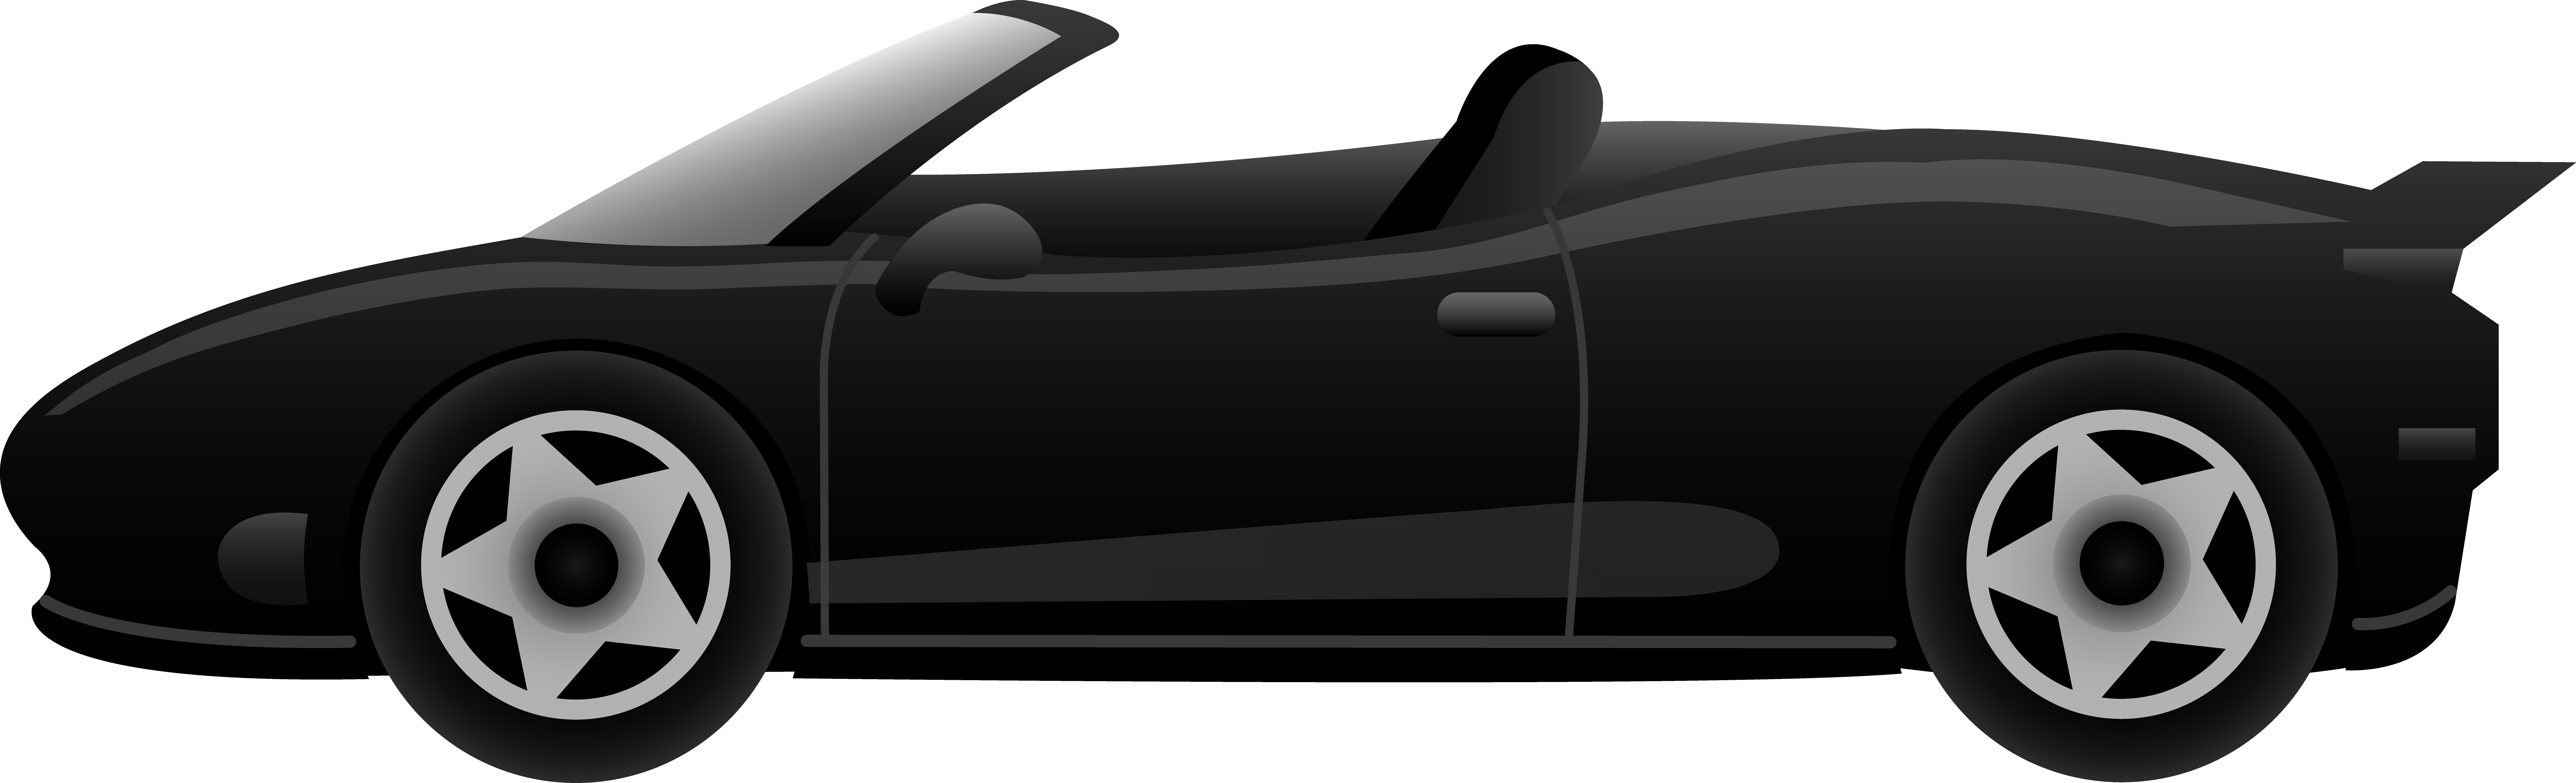 Ferrari Cartoon Car